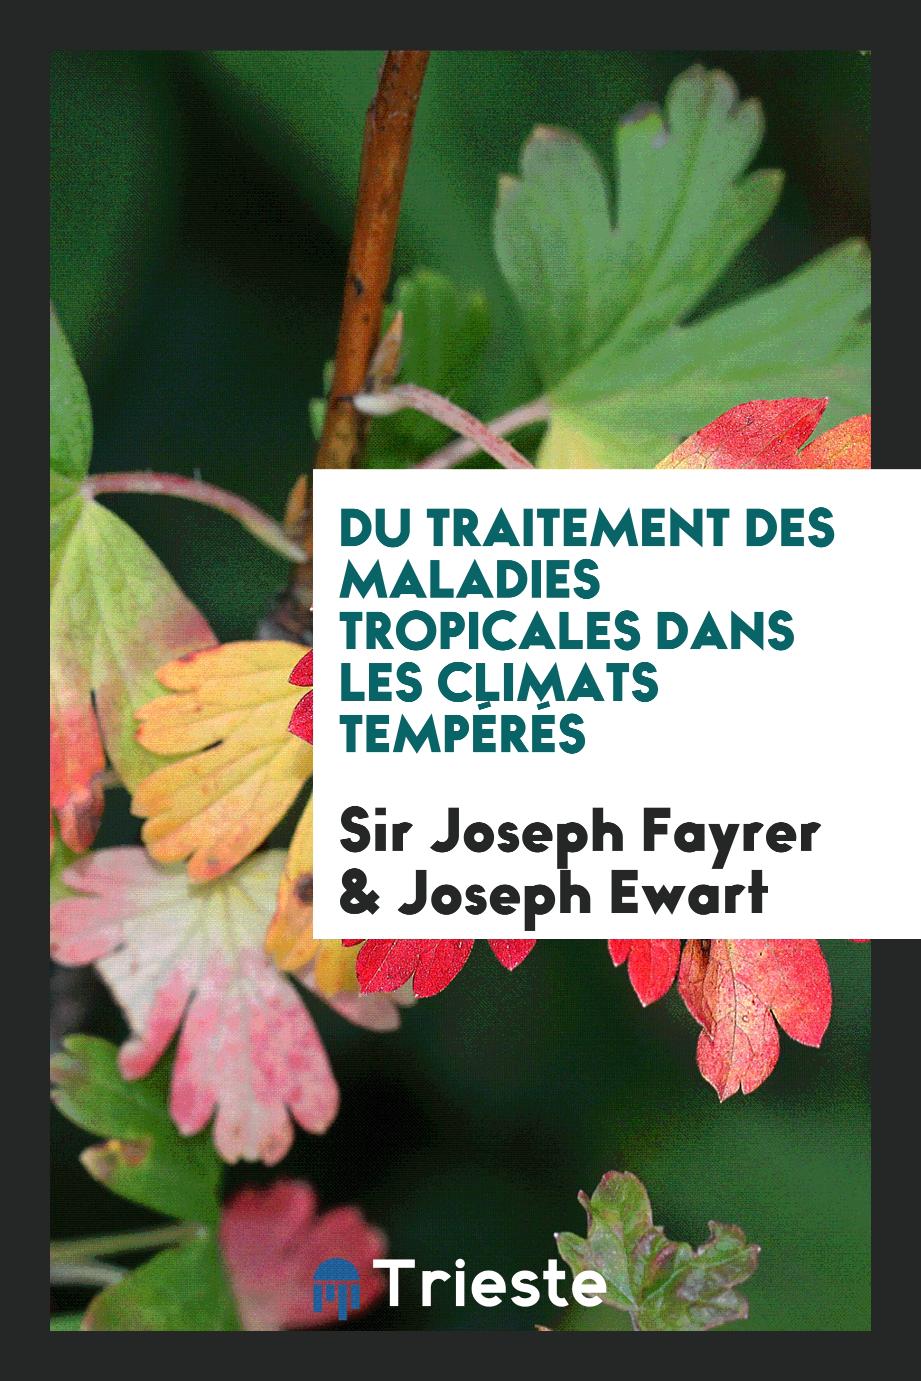 Sir Joseph Fayrer, Joseph Ewart - Du Traitement des Maladies Tropicales Dans les Climats Tempérés